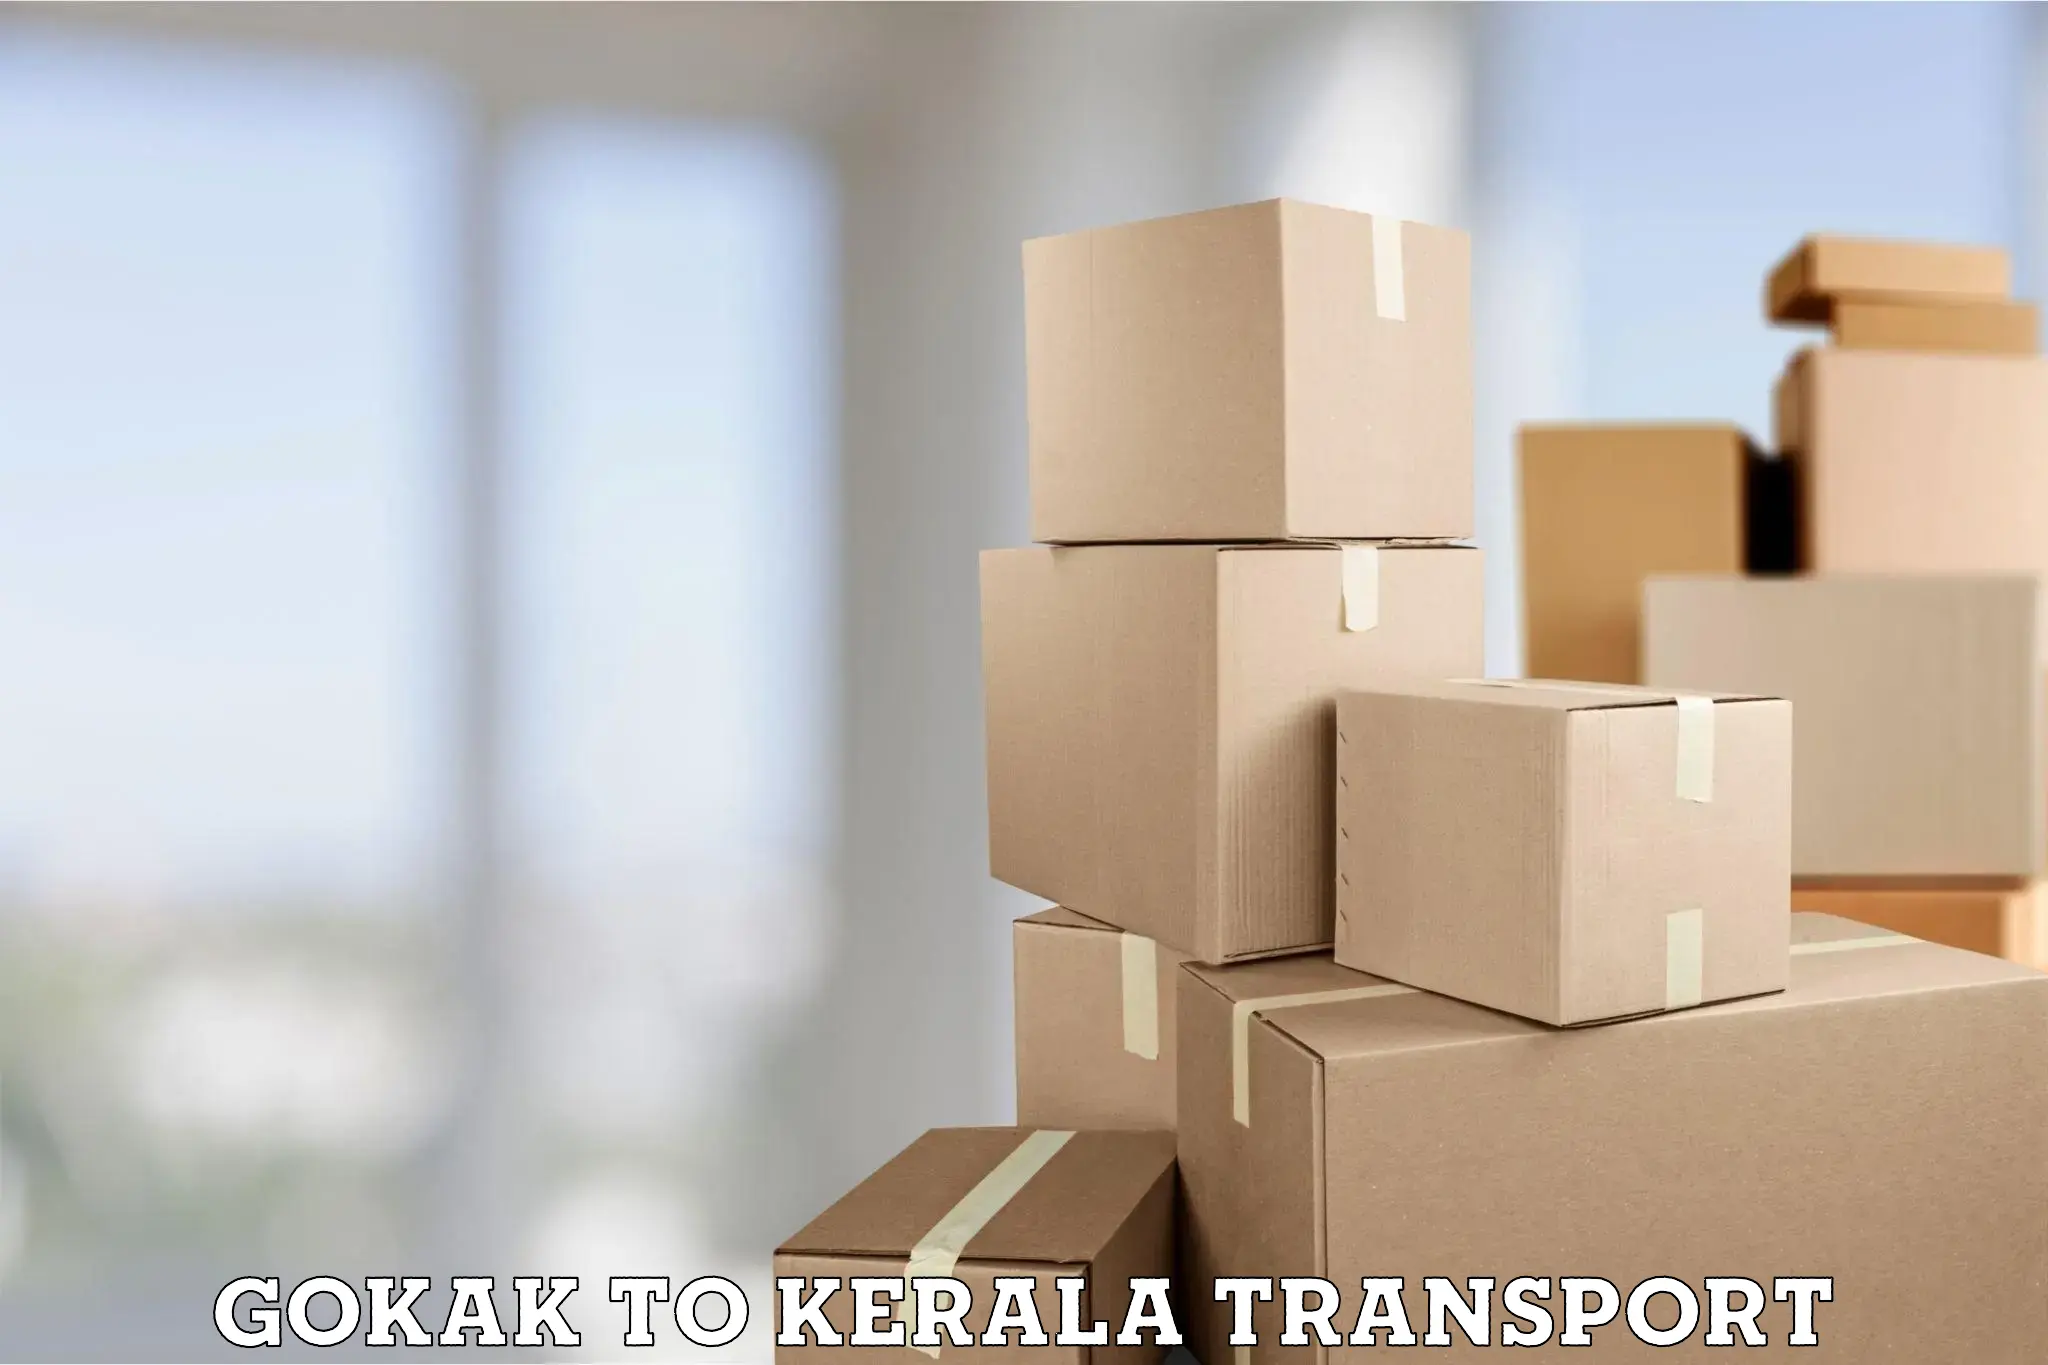 Lorry transport service Gokak to Ernakulam